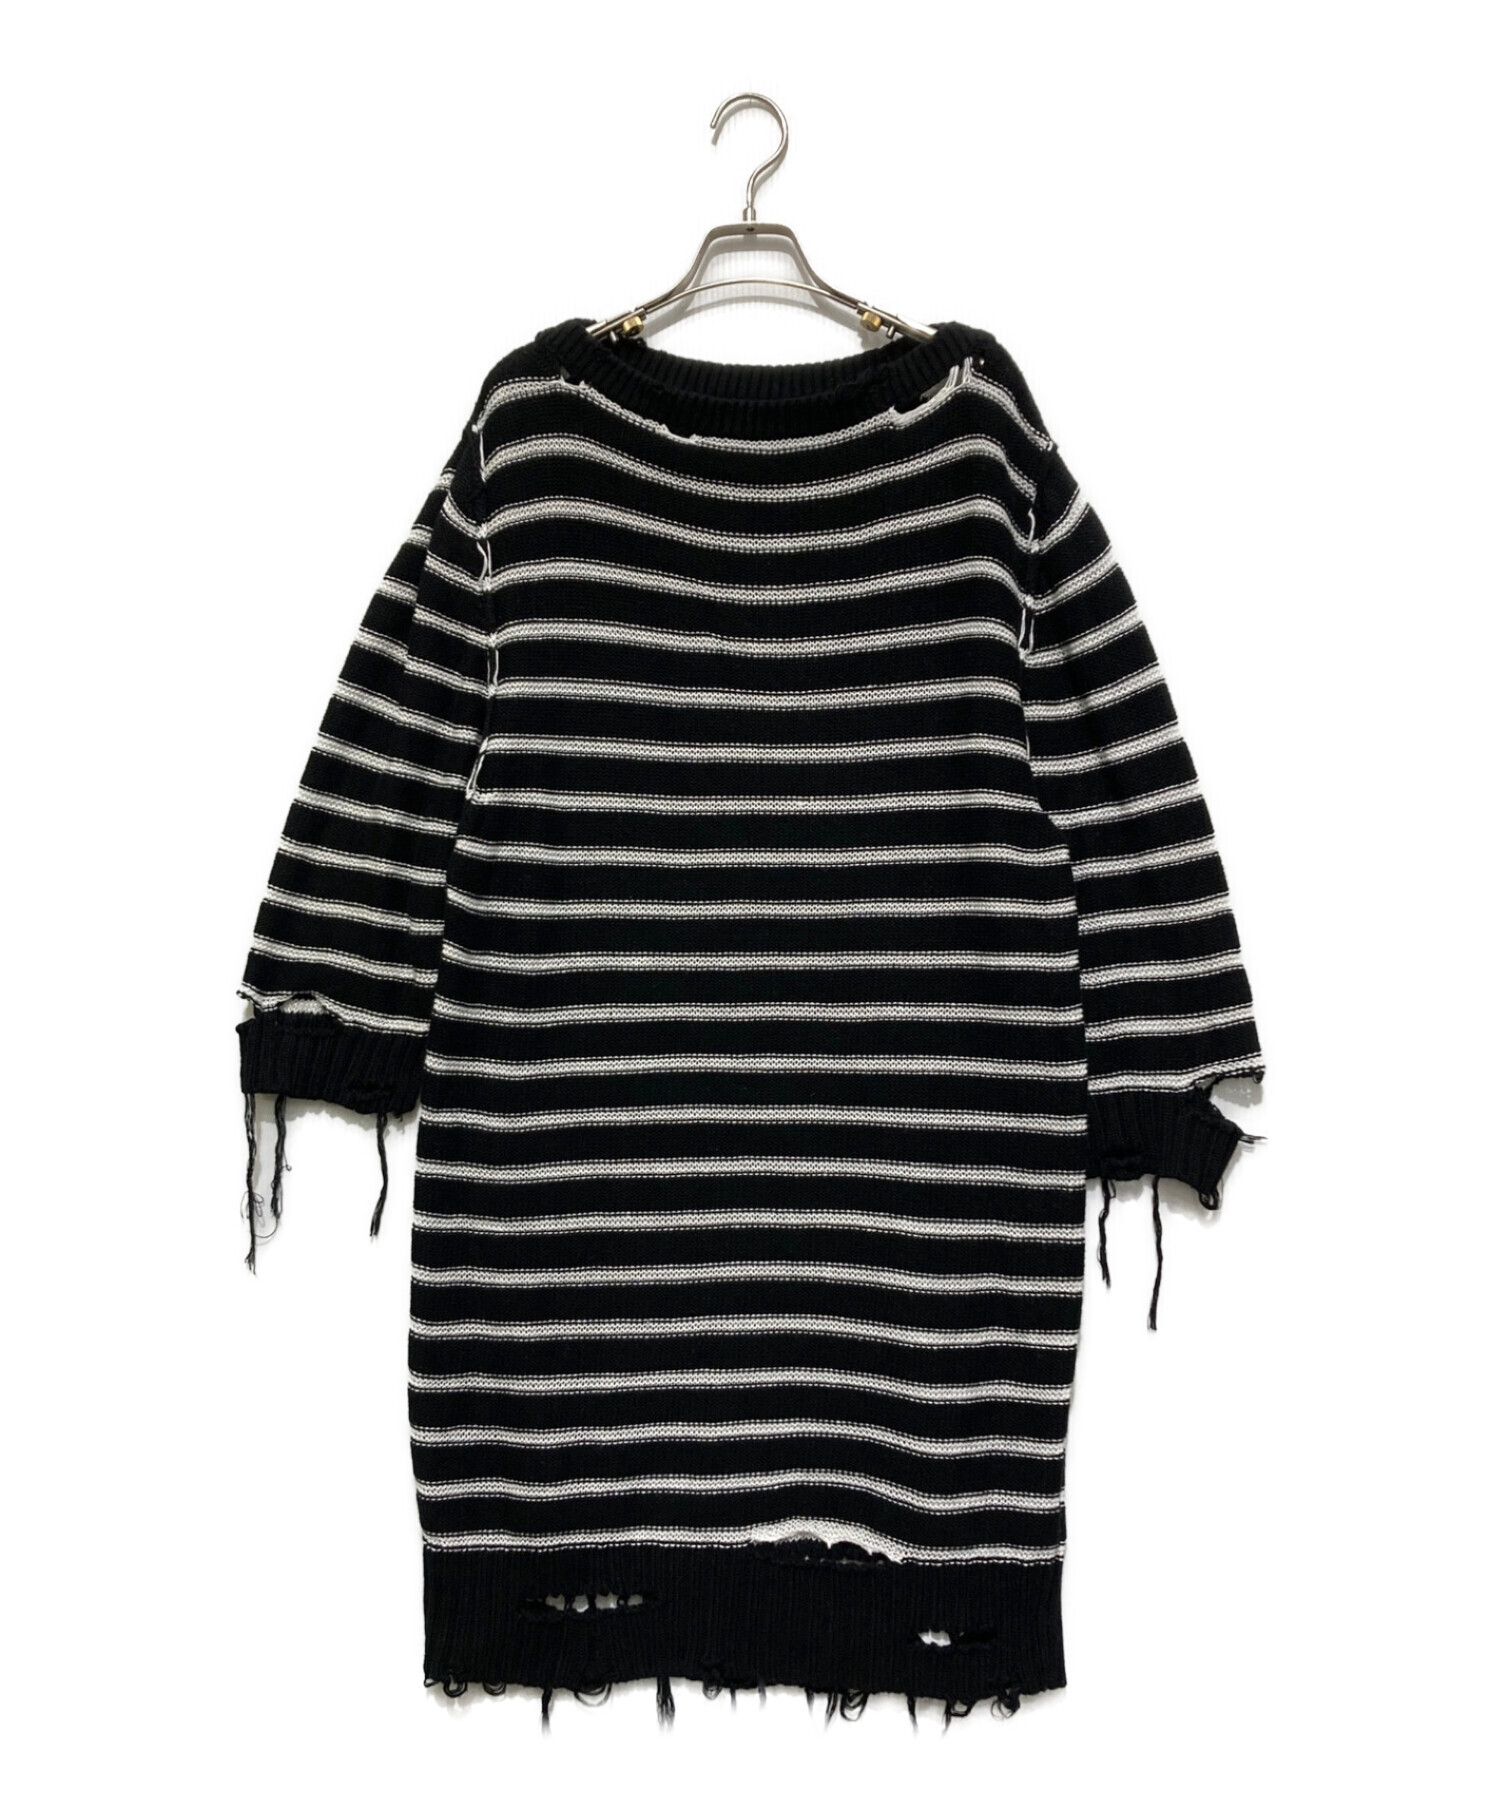 MM6 Maison Margiela (エムエムシックス メゾンマルジェラ) Distressed knit dress ホワイト×ブラック  サイズ:SIZE S